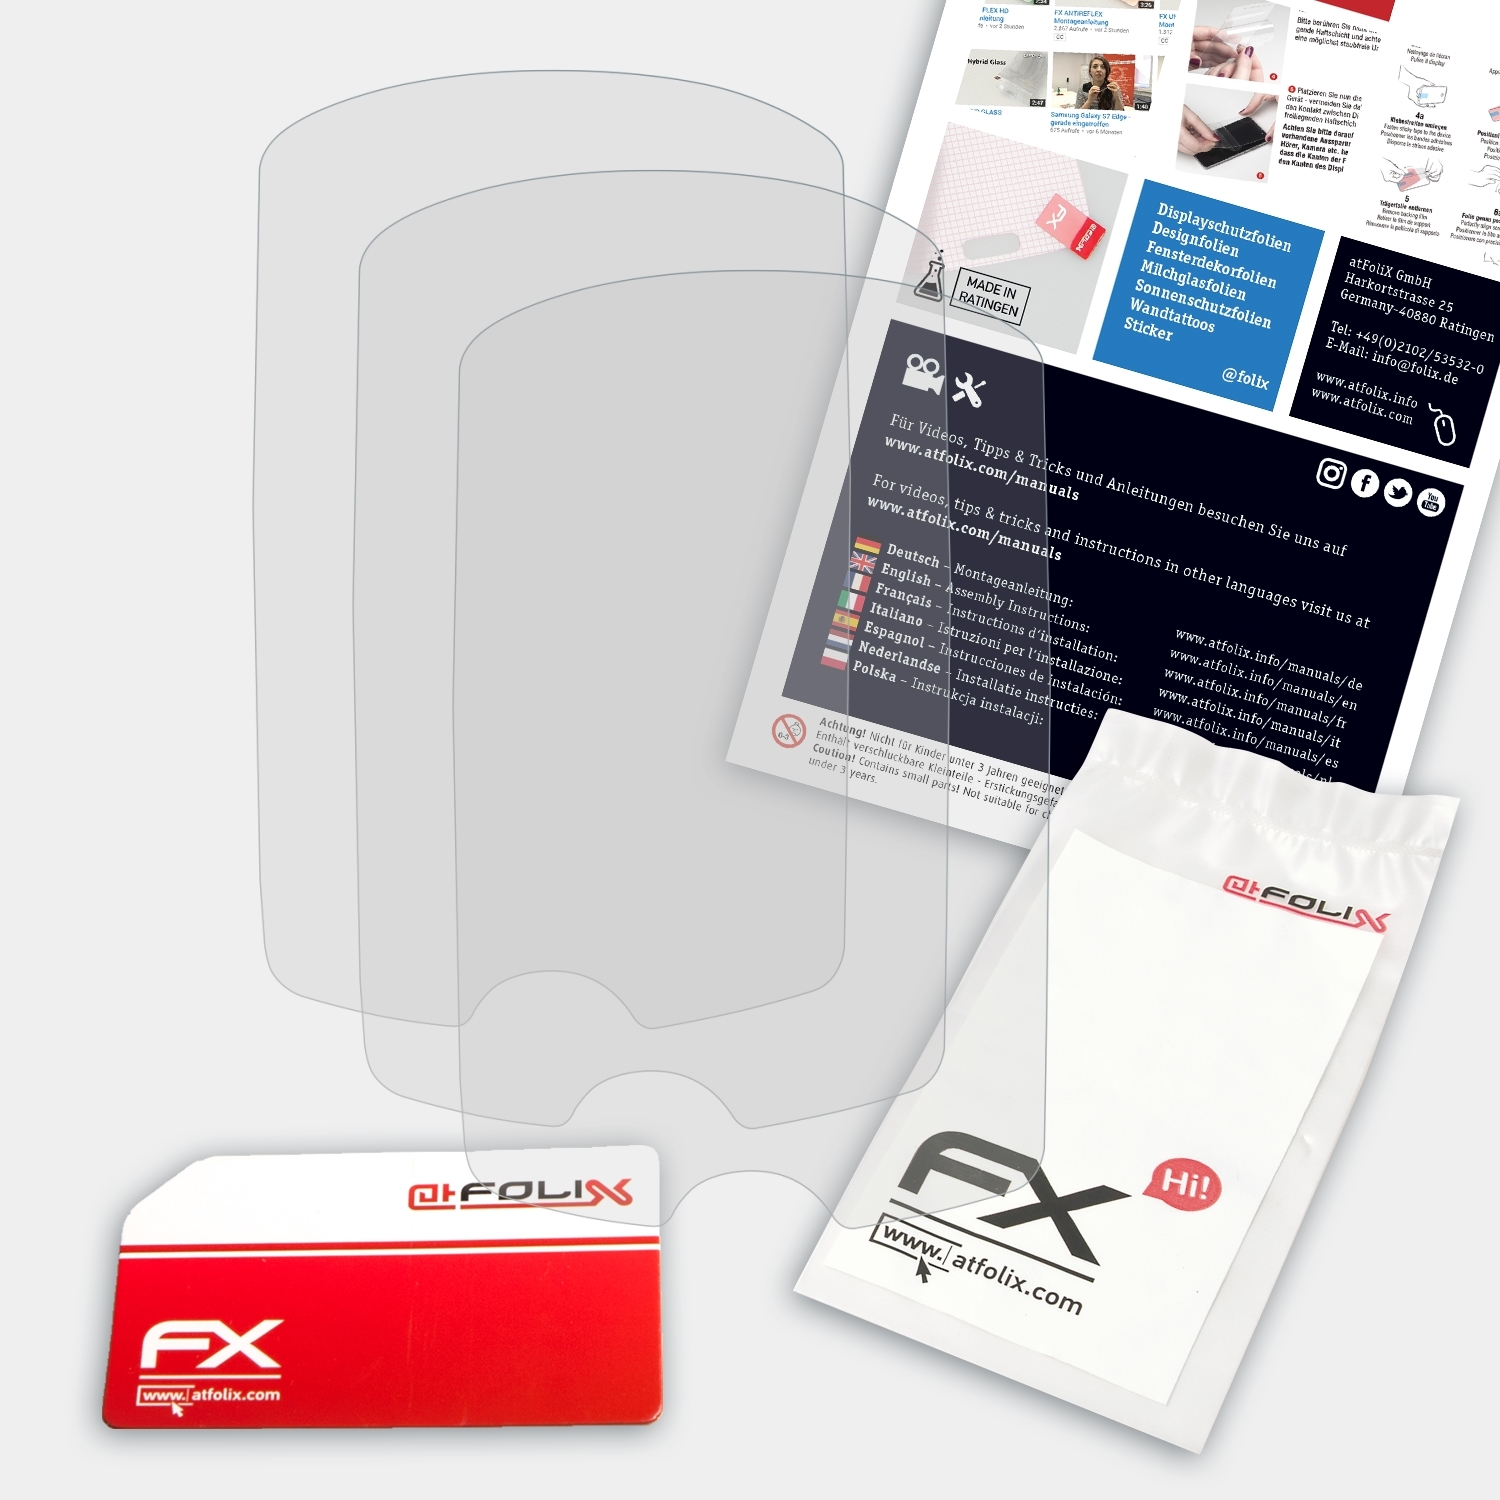 ATFOLIX 3x FX-Antireflex Displayschutz(für 705) Garmin Edge